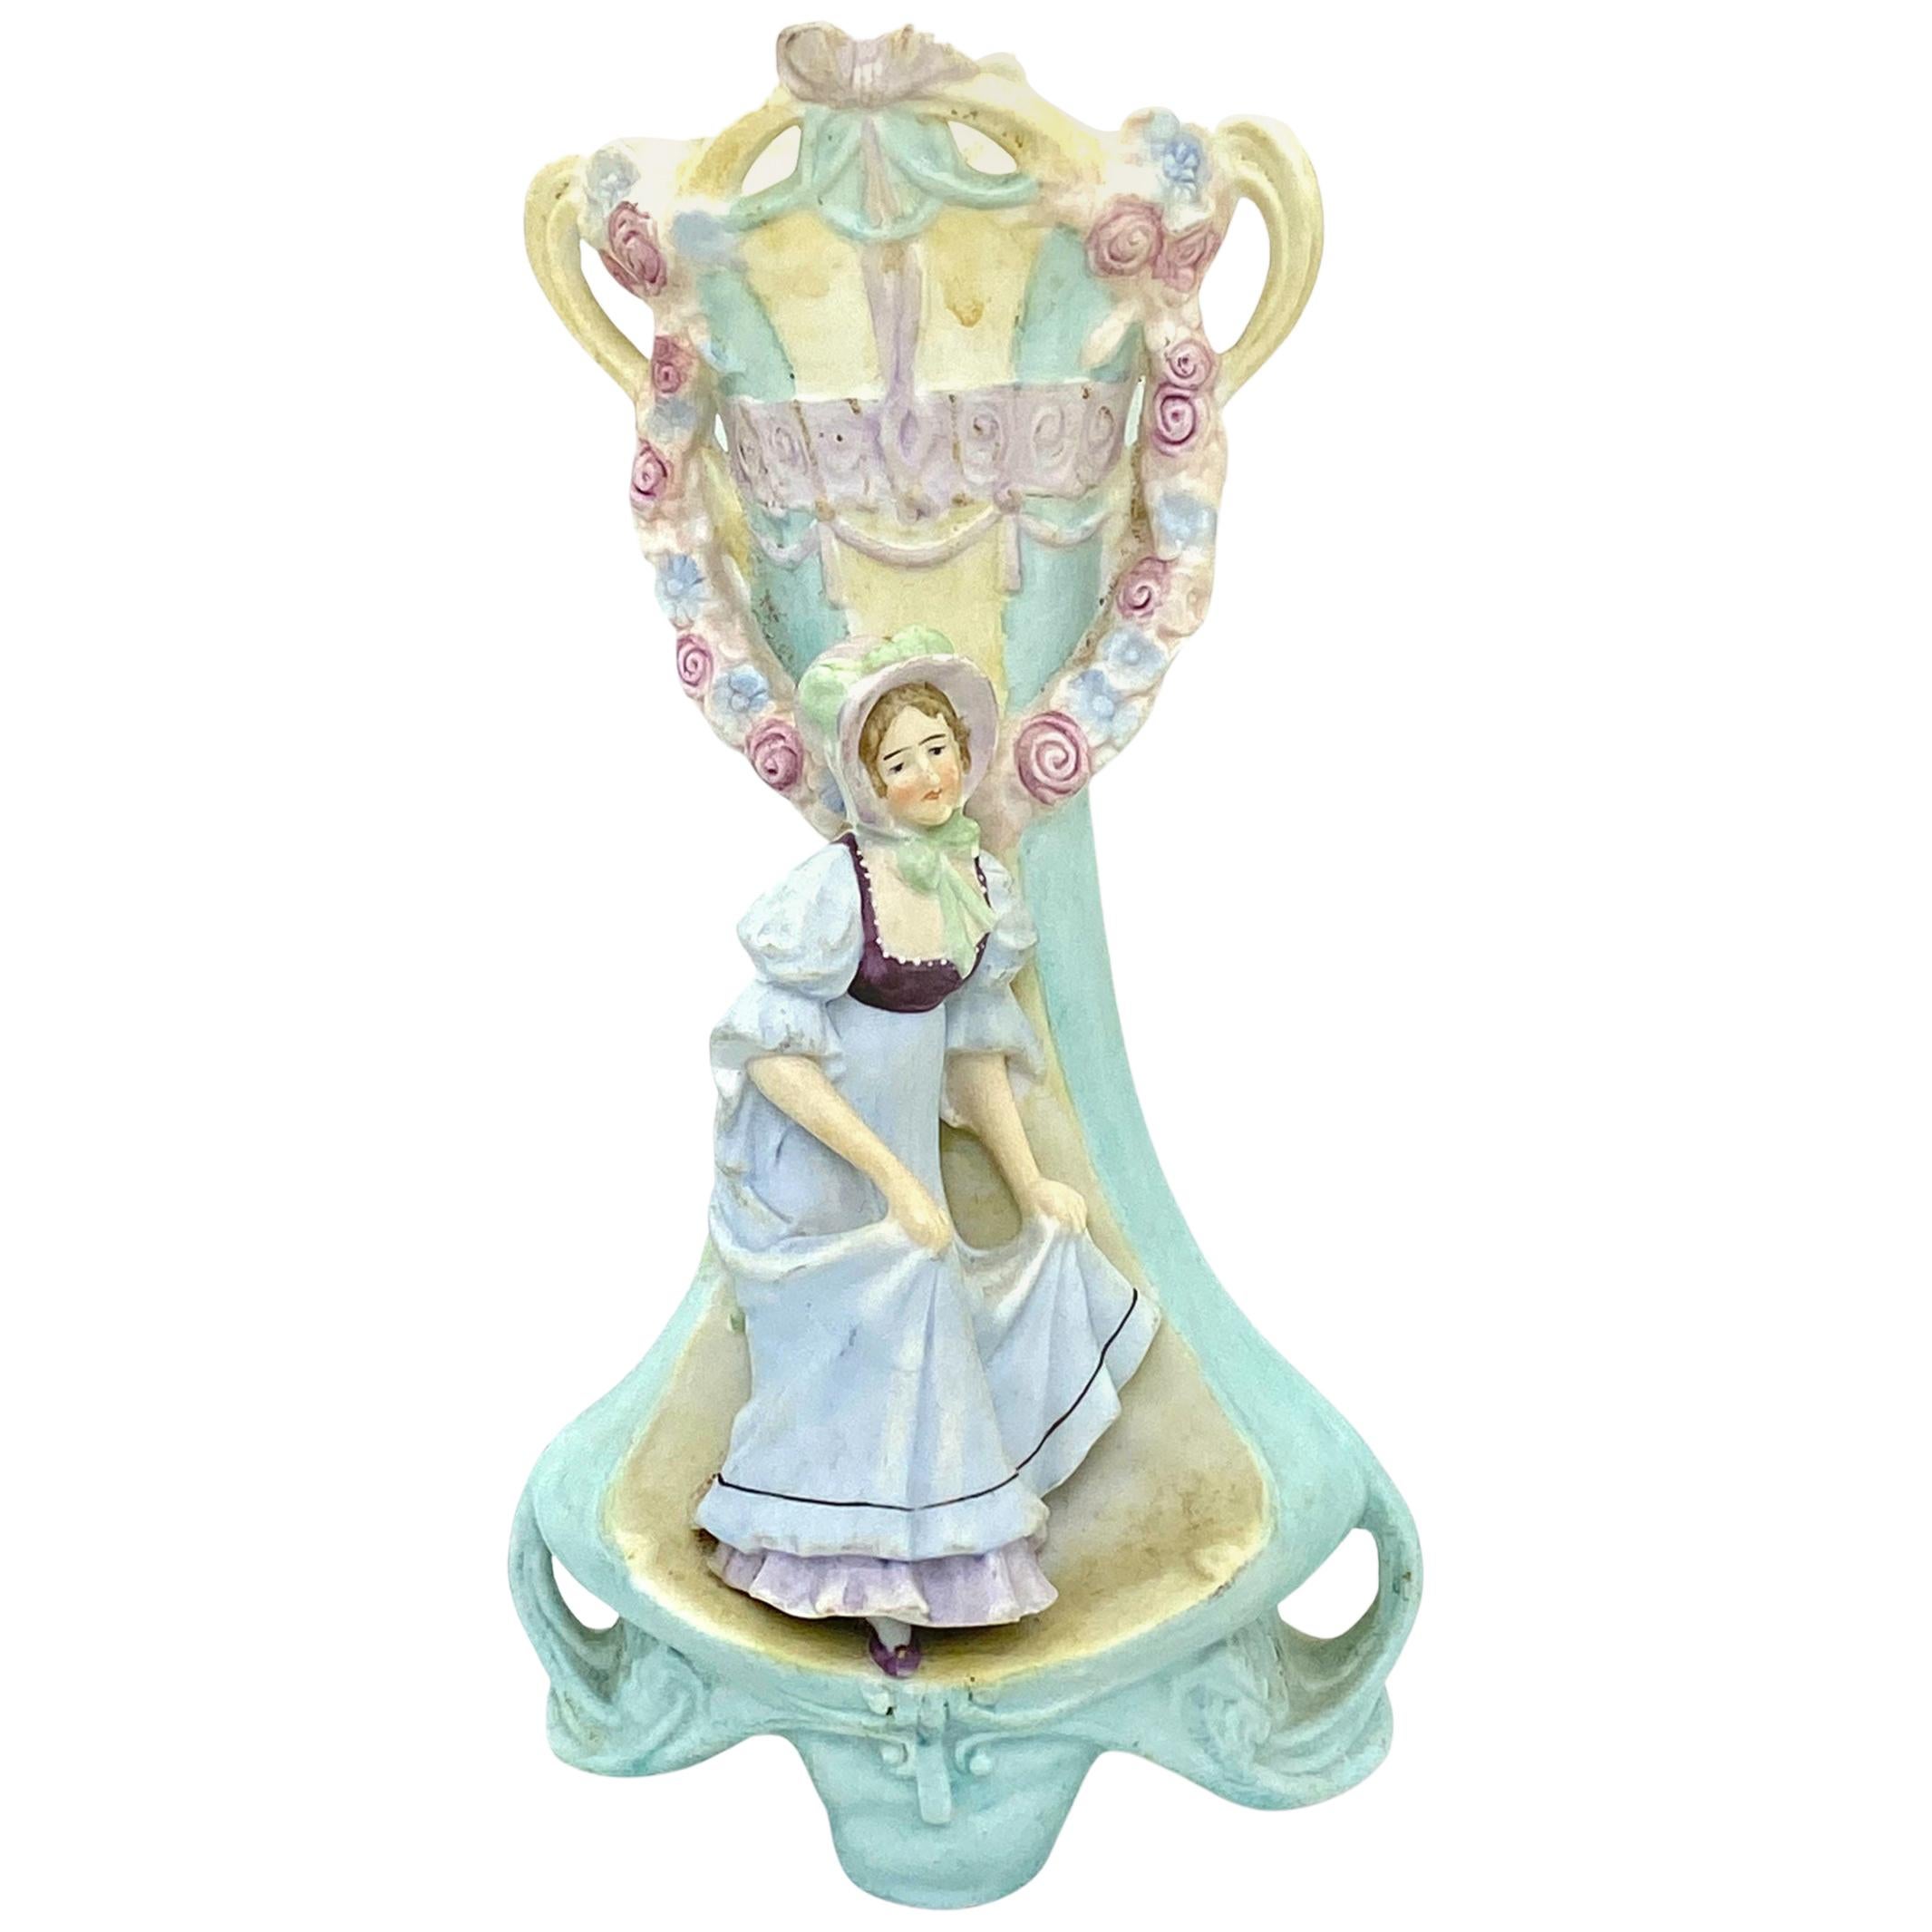 Art Nouveau Vase Noble Lady Figurine Bisque Porcelain, German, circa 1900